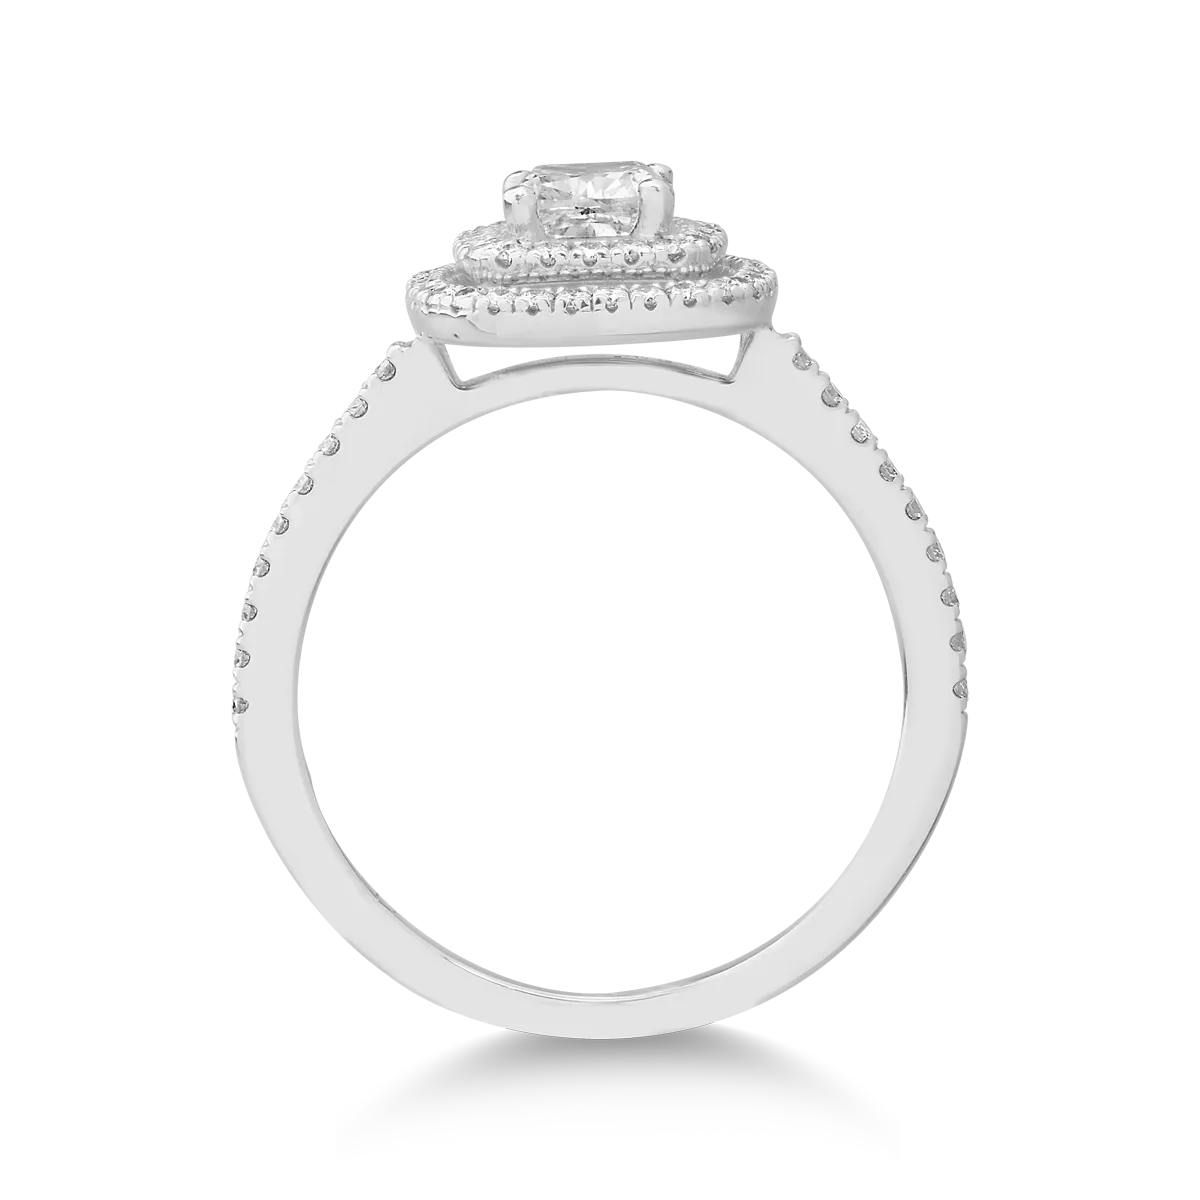 Годежен пръстен от 18K бяло злато с 0.9ct диамант и 0.33ct диаманти